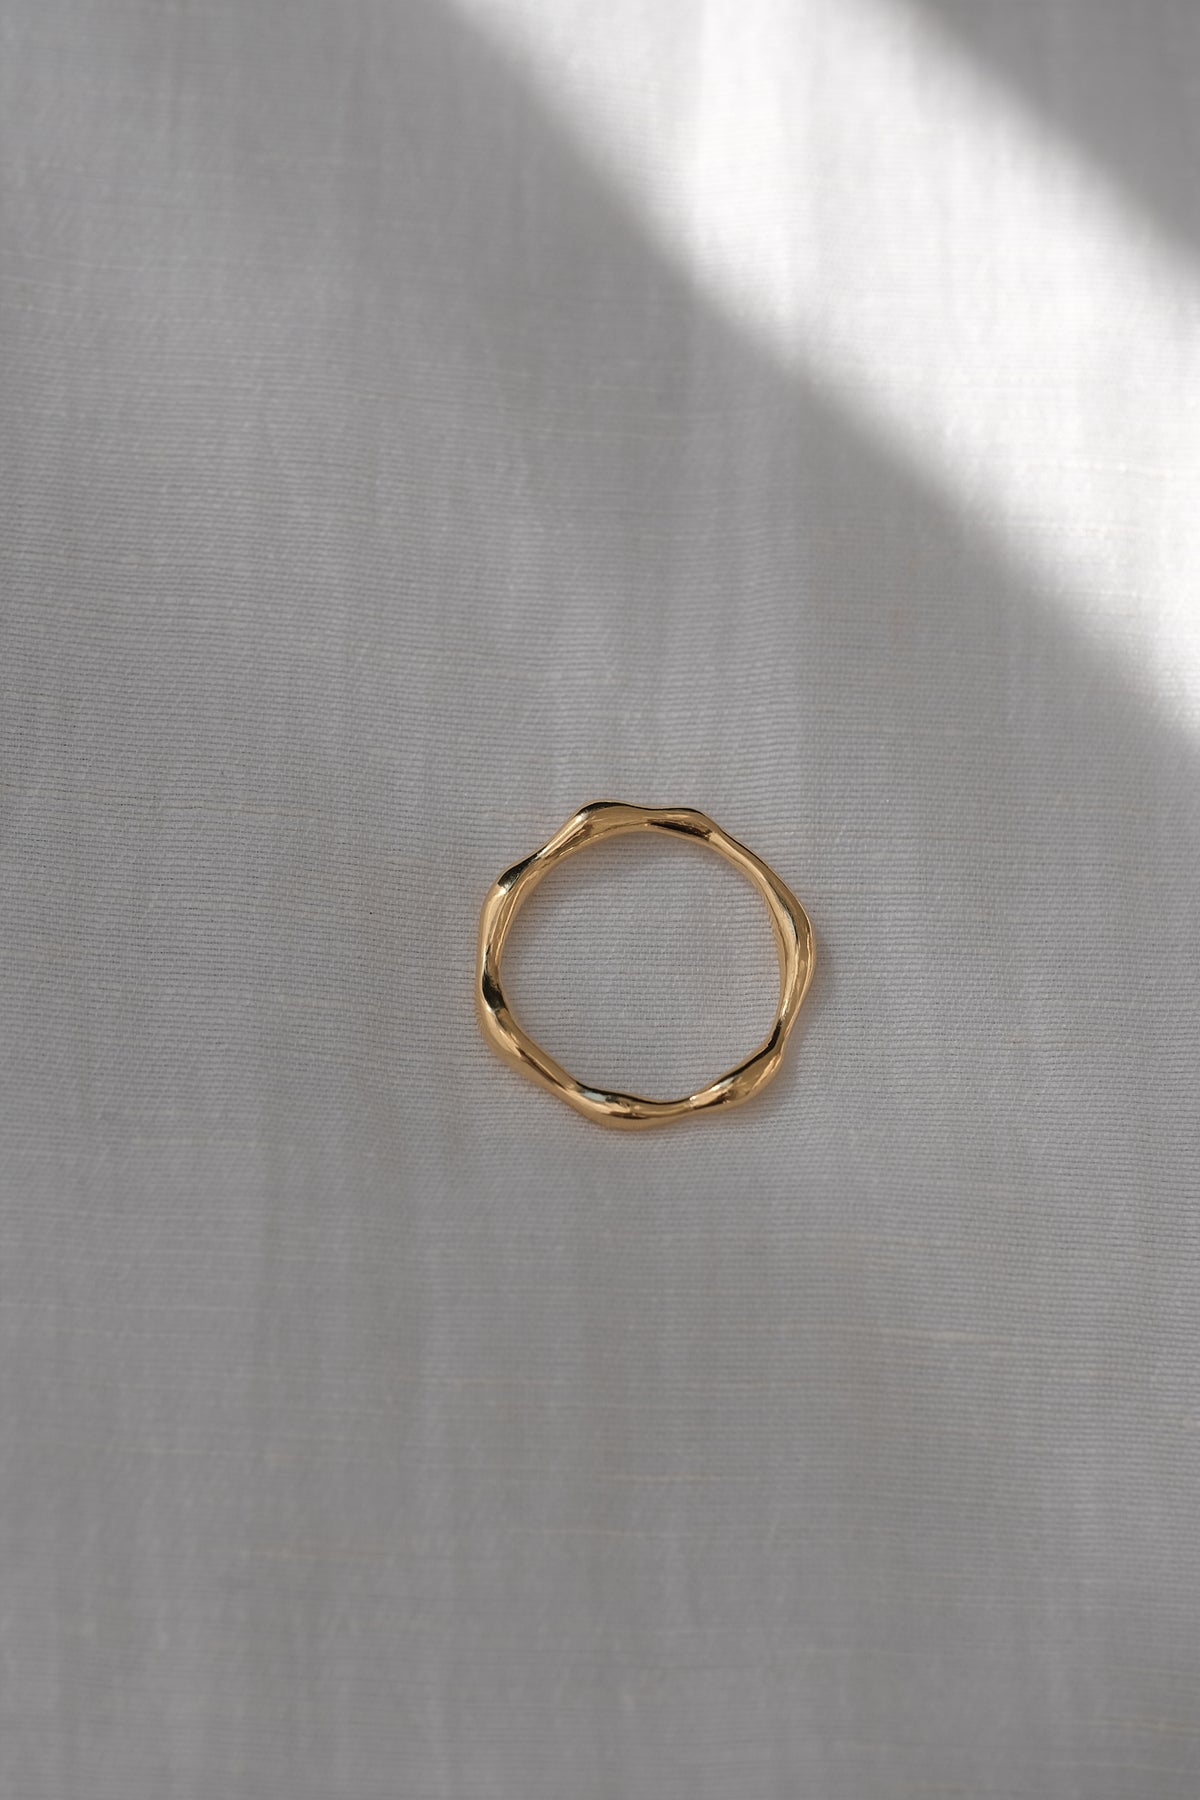 LUMI ring 18k gold